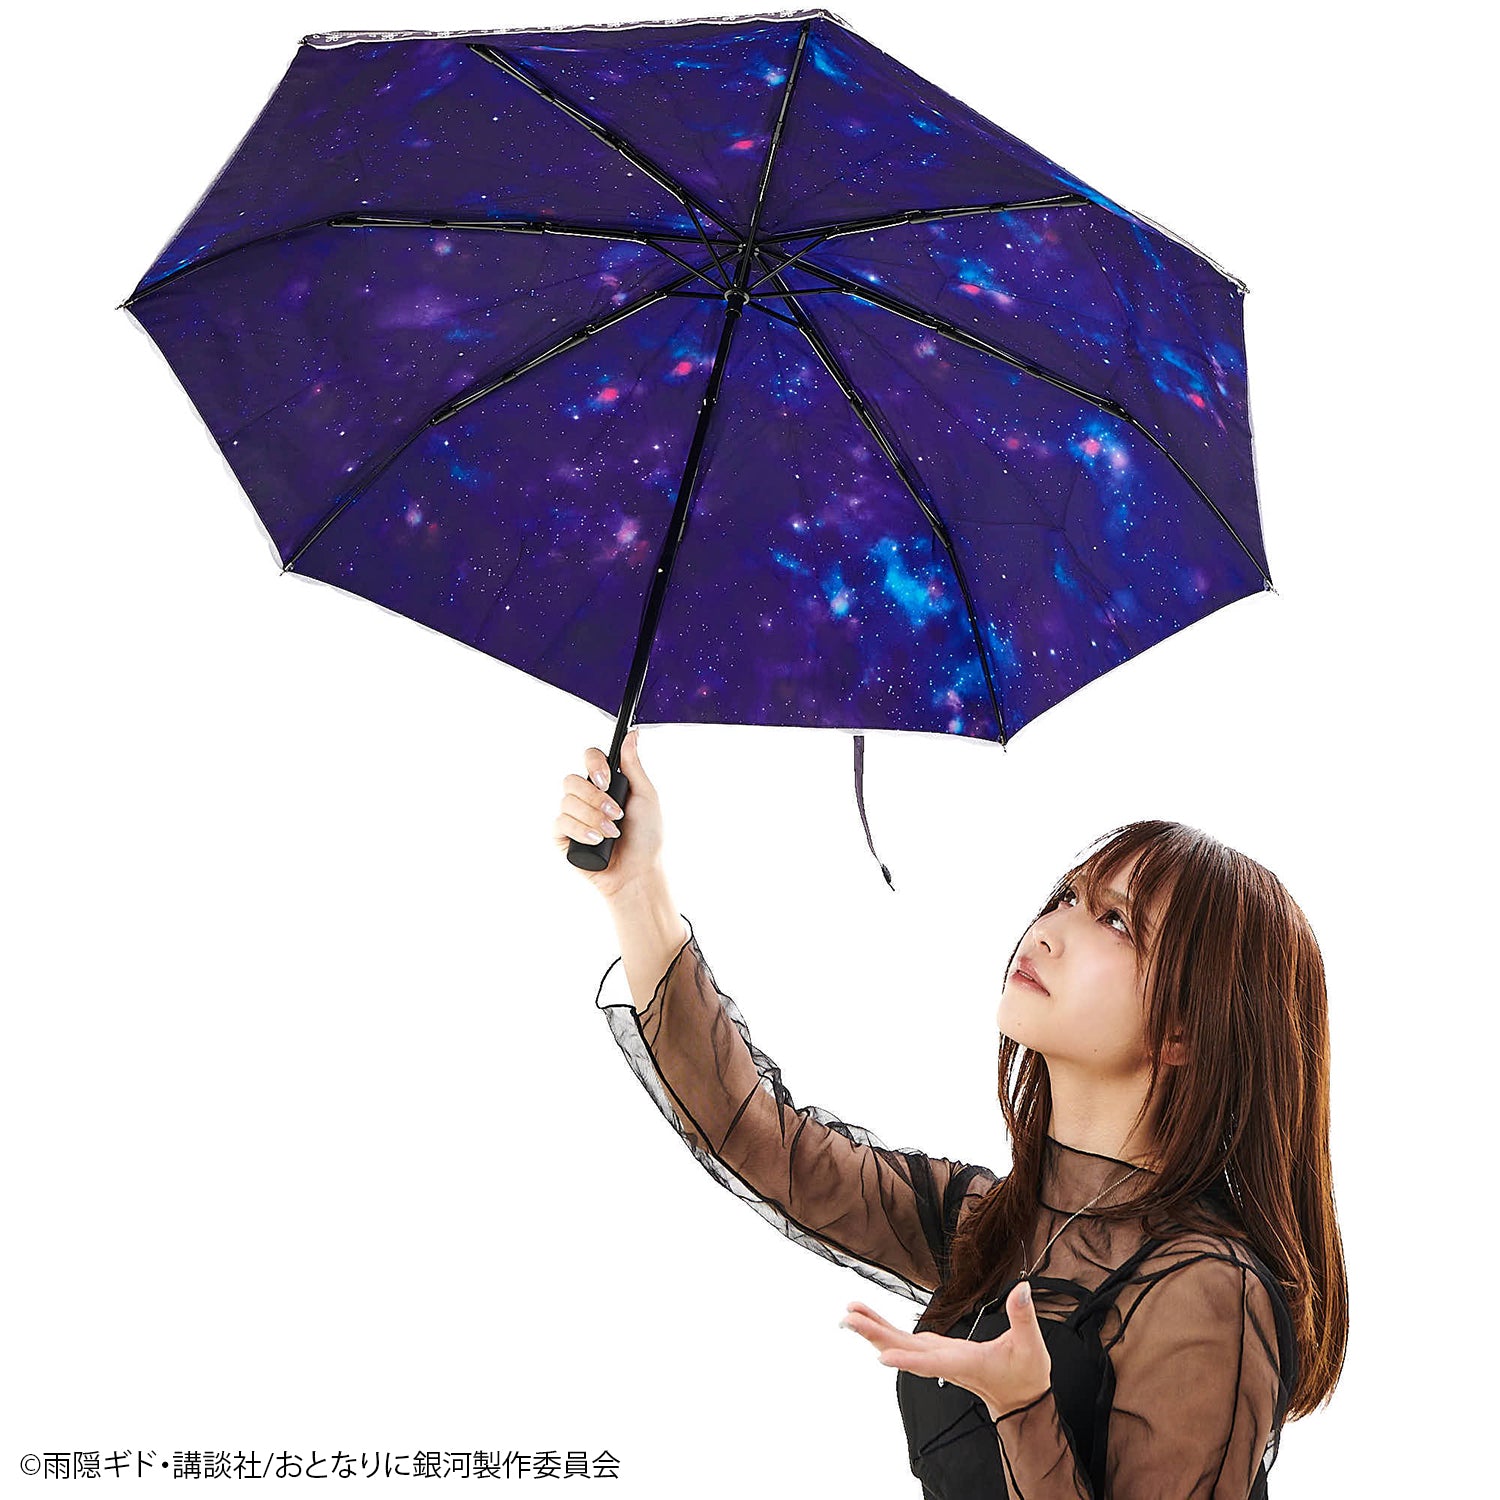 おとなりに銀河』UVカット機能付き晴雨兼用折りたたみ傘【予約商品 